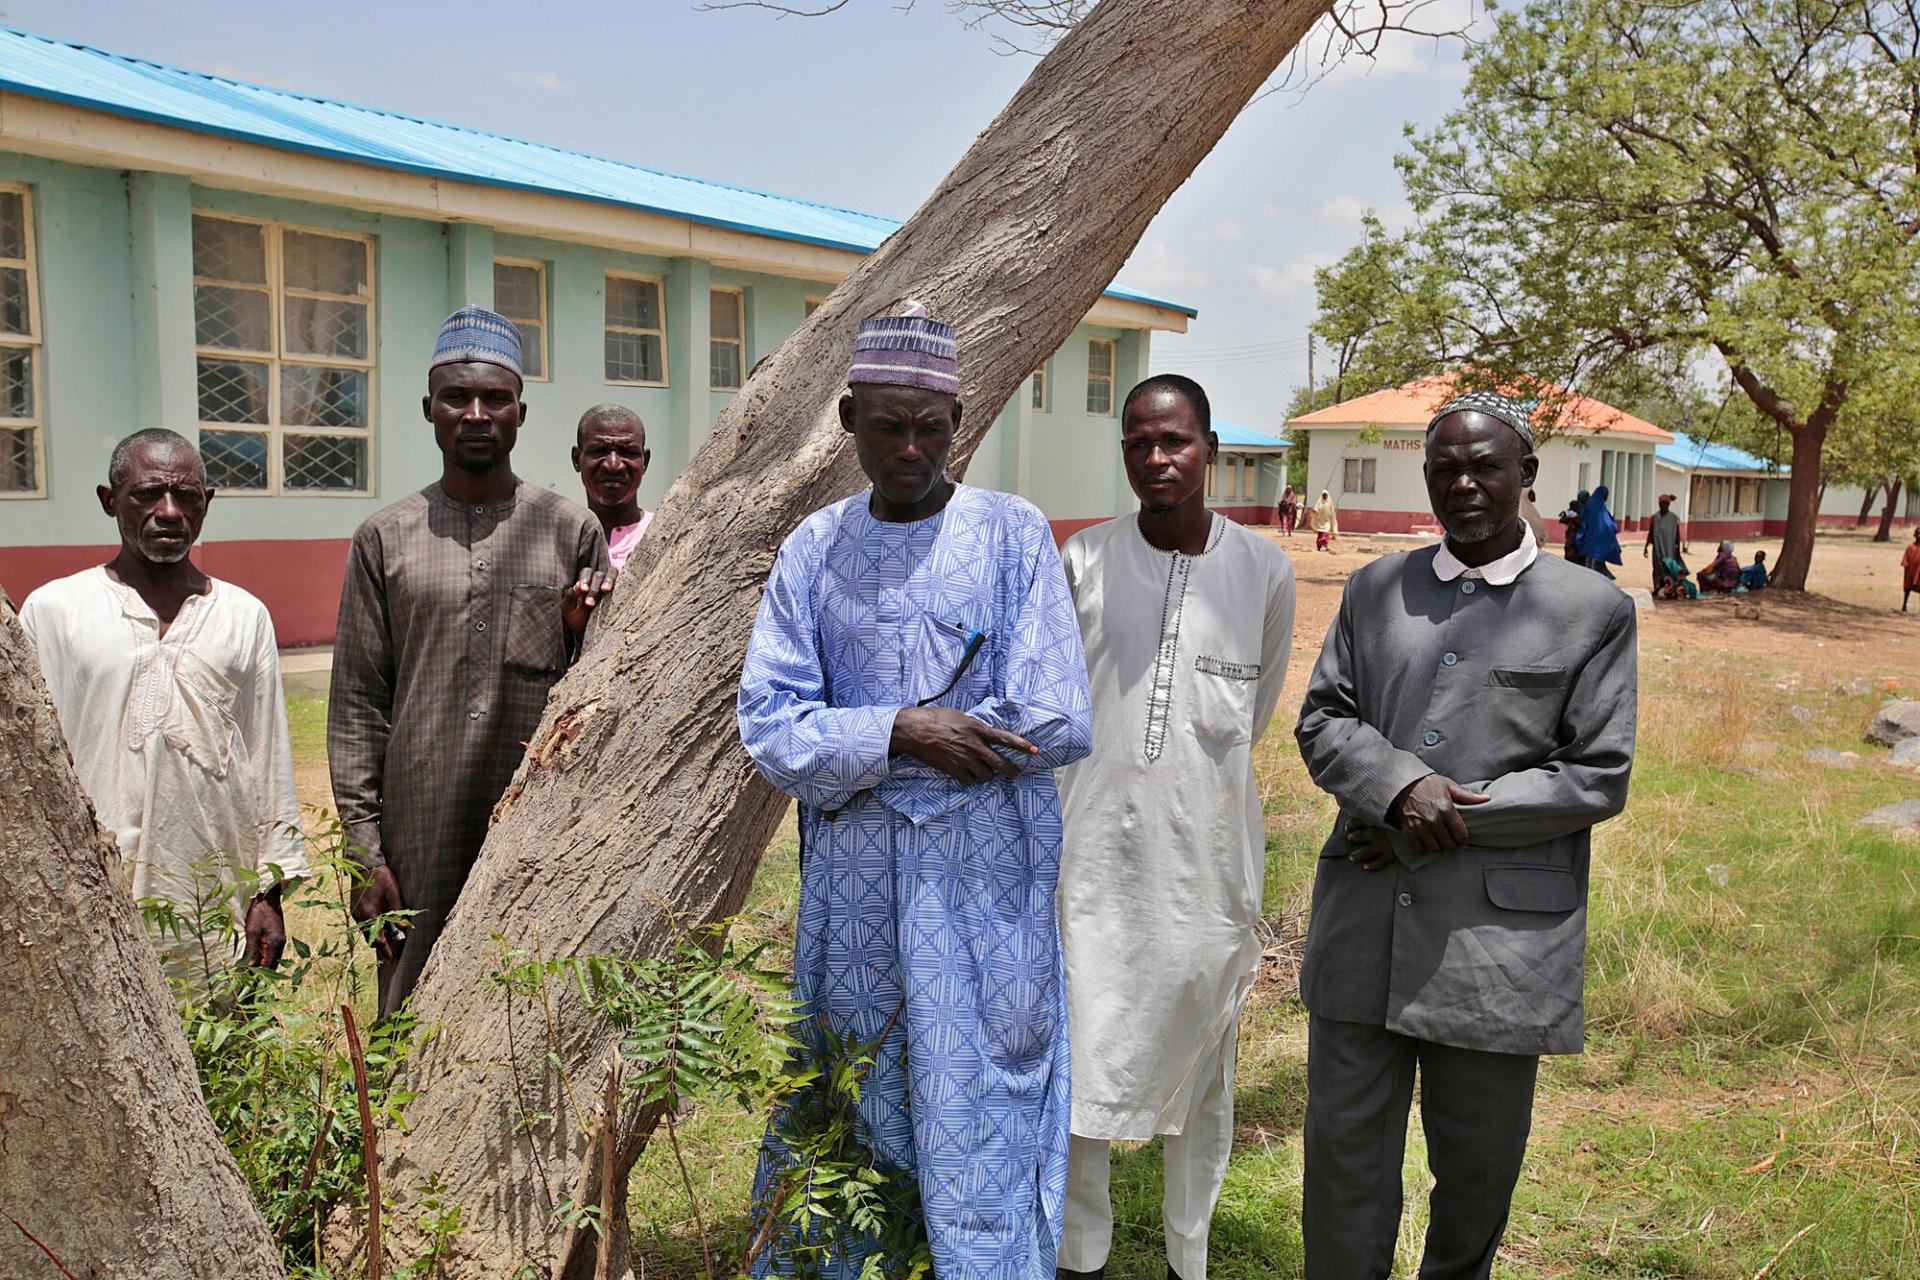 Bala Namala (centre) est responsable des familles déplacées qui ont trouvé refuge dans une école de la ville de Jibia, après avoir fui des violences dans leurs villages. État de Katsina, Nigeria, juin 2022. 